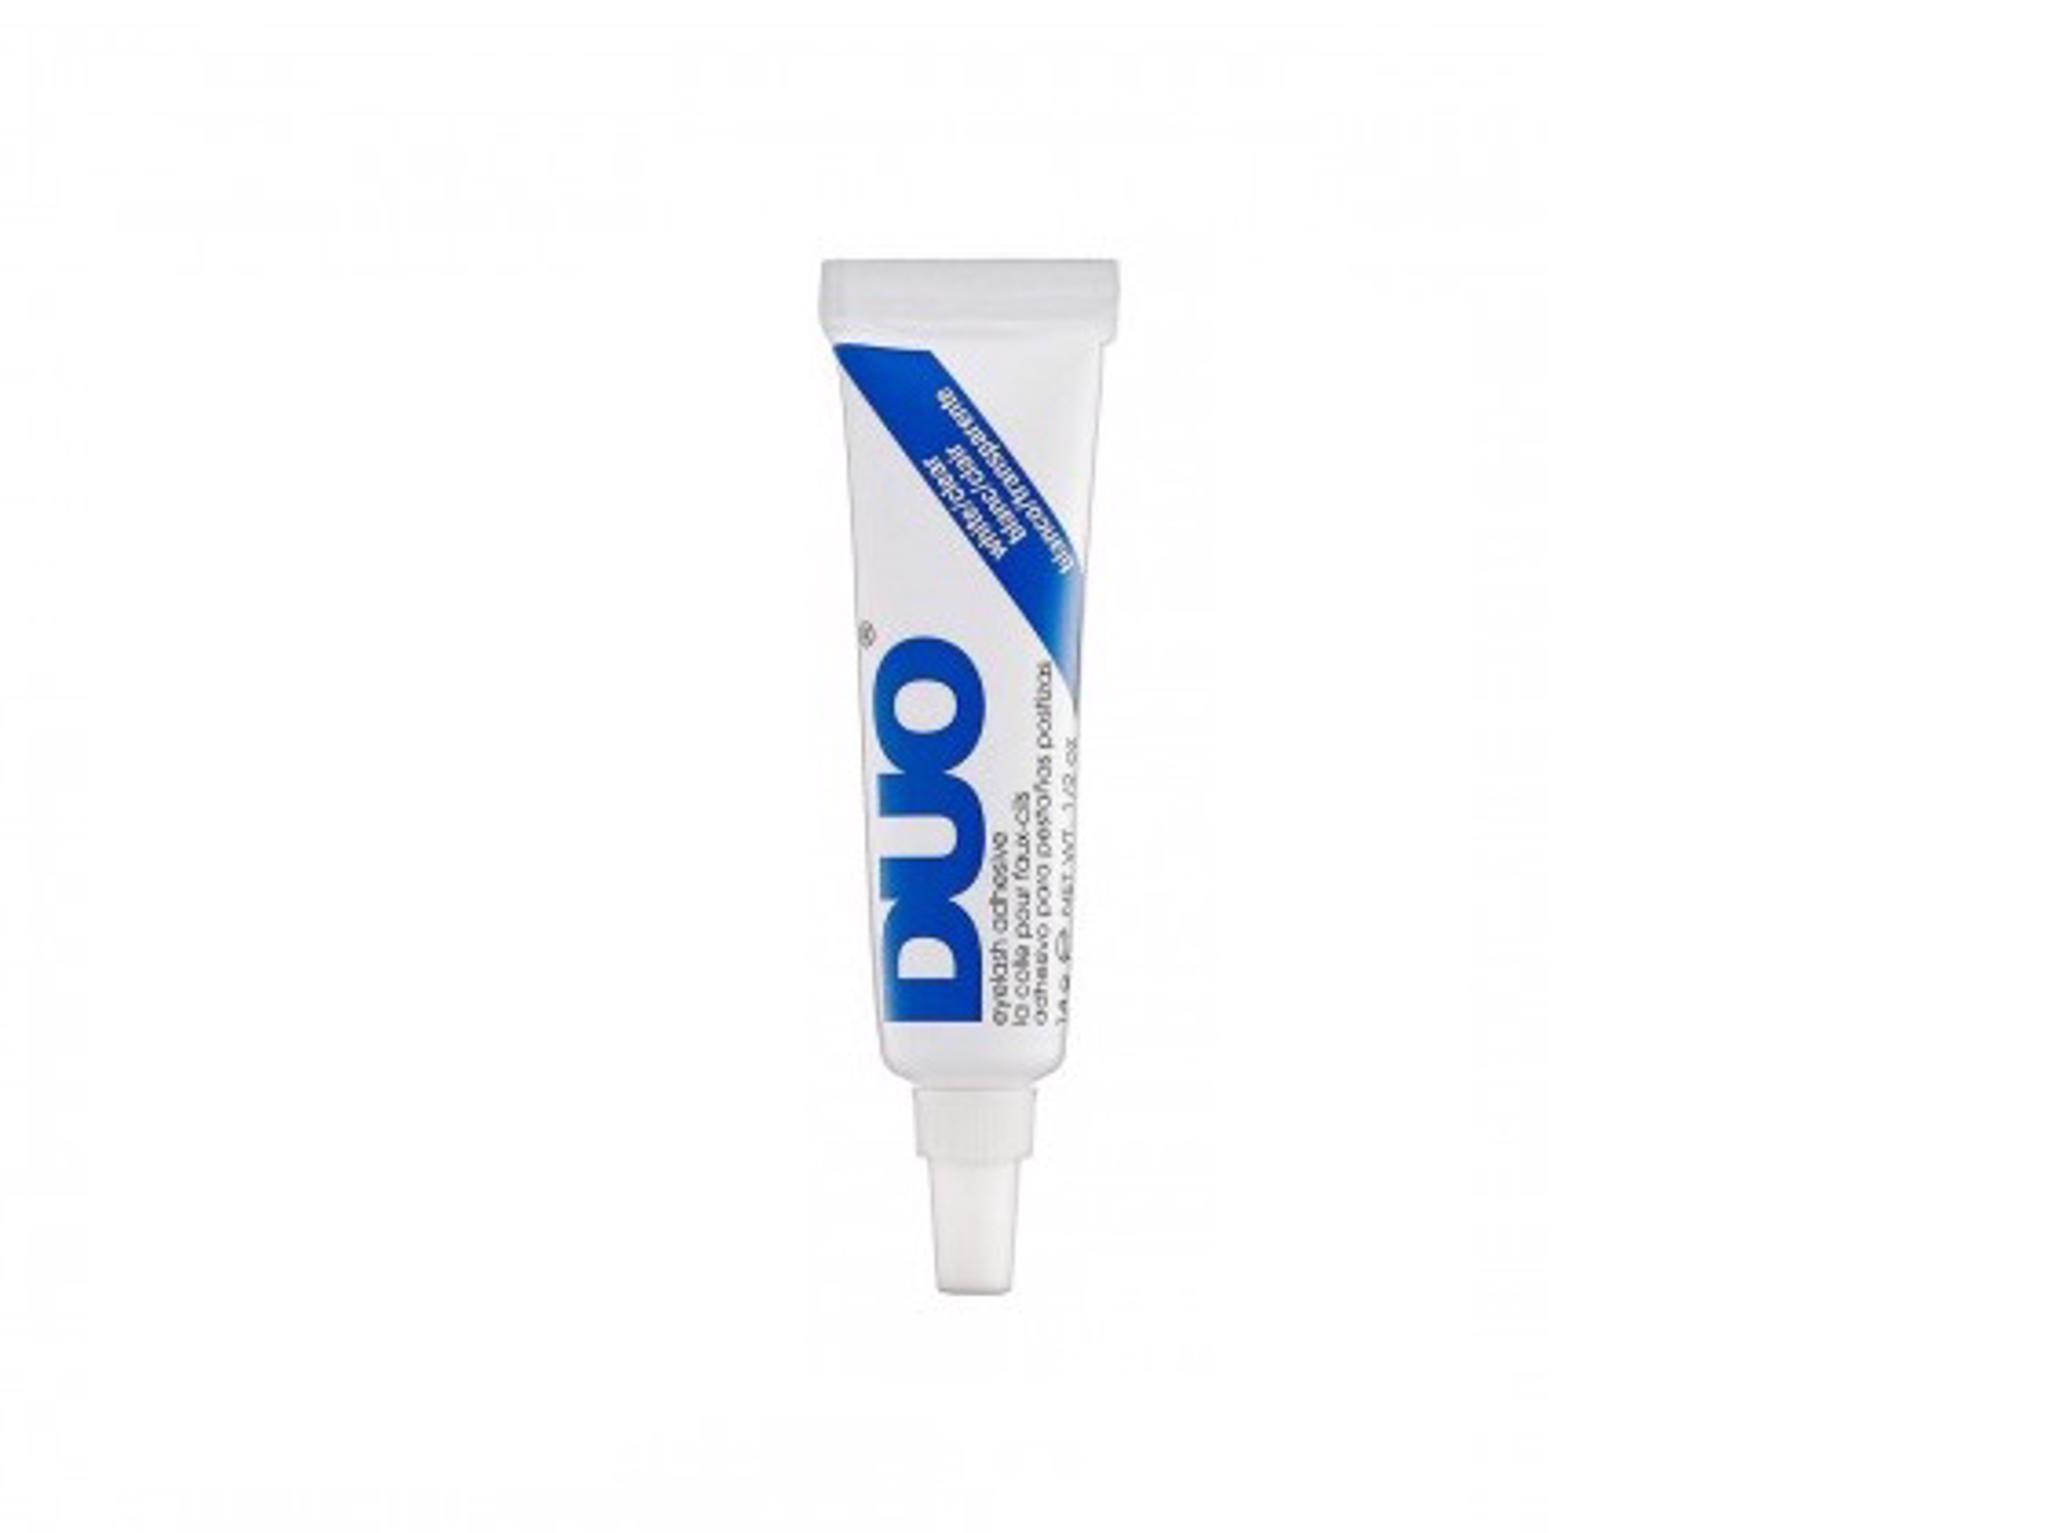 DUO - Striplash Adhesive - White / Clear 1352